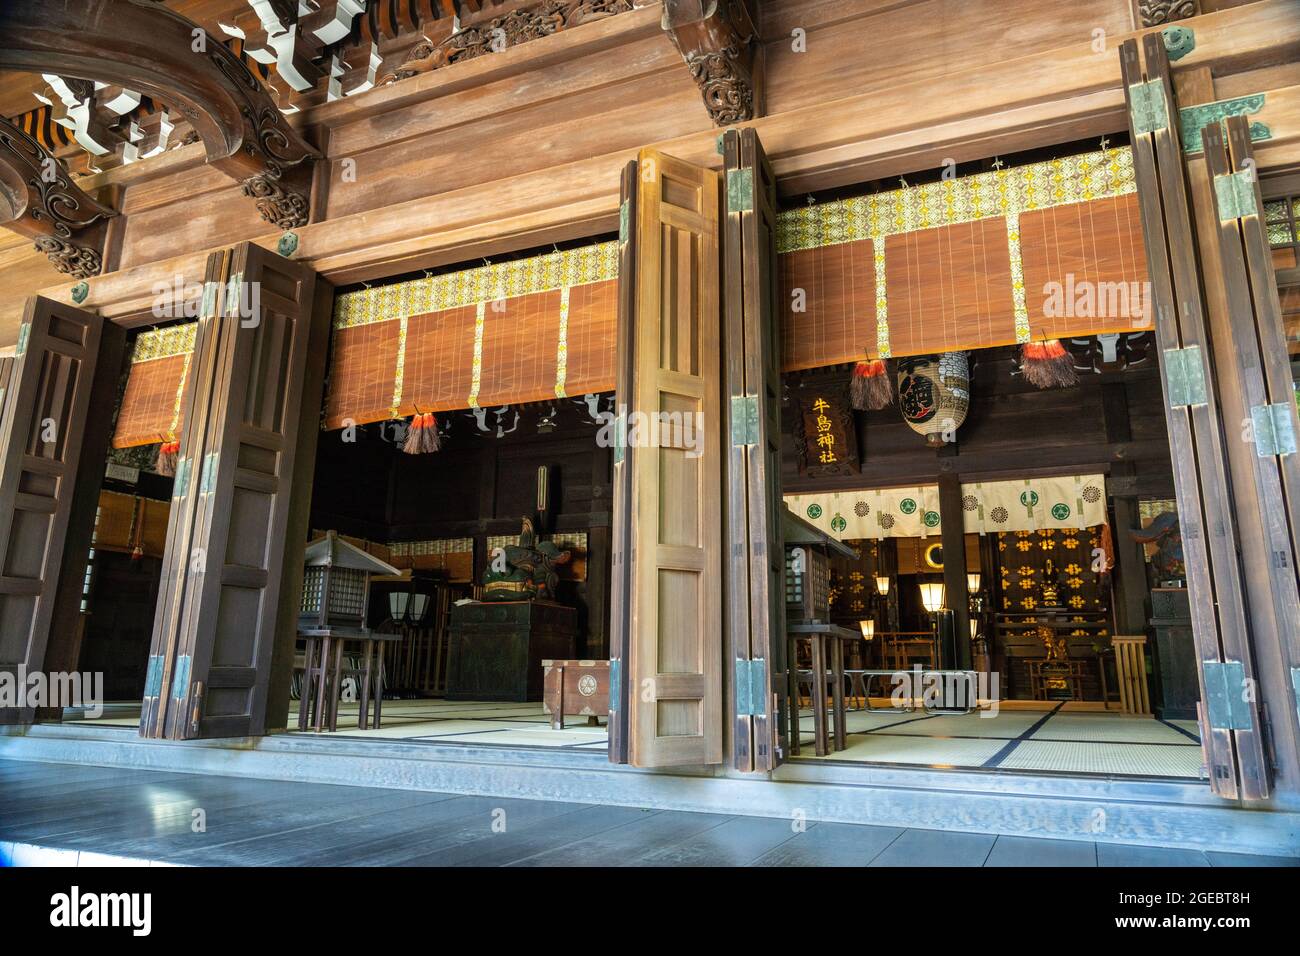 Andachtshalle am Ushijima-Schrein am Ostufer des Sumida-Flusses in Sumida-ku, Tokio, Japan. Der Tempel wurde in 929 u.Z. aus hinoki Zypressenholz gebaut. Stockfoto